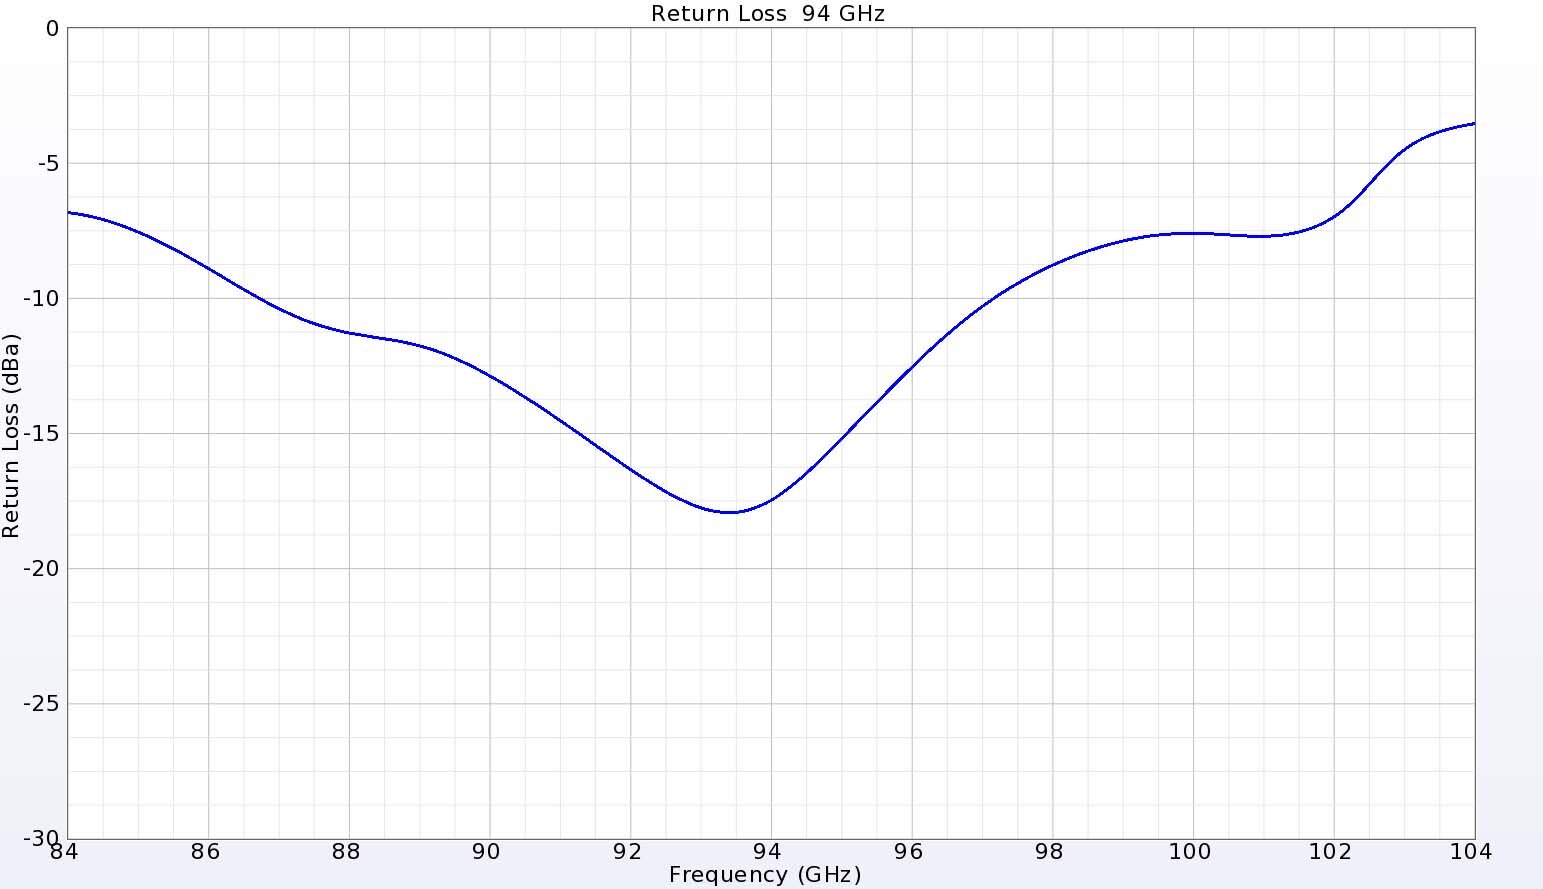 Figura 4: La pérdida de retorno del puerto de 94 GHz muestra una buena correspondencia con valores inferiores a -15 dB.